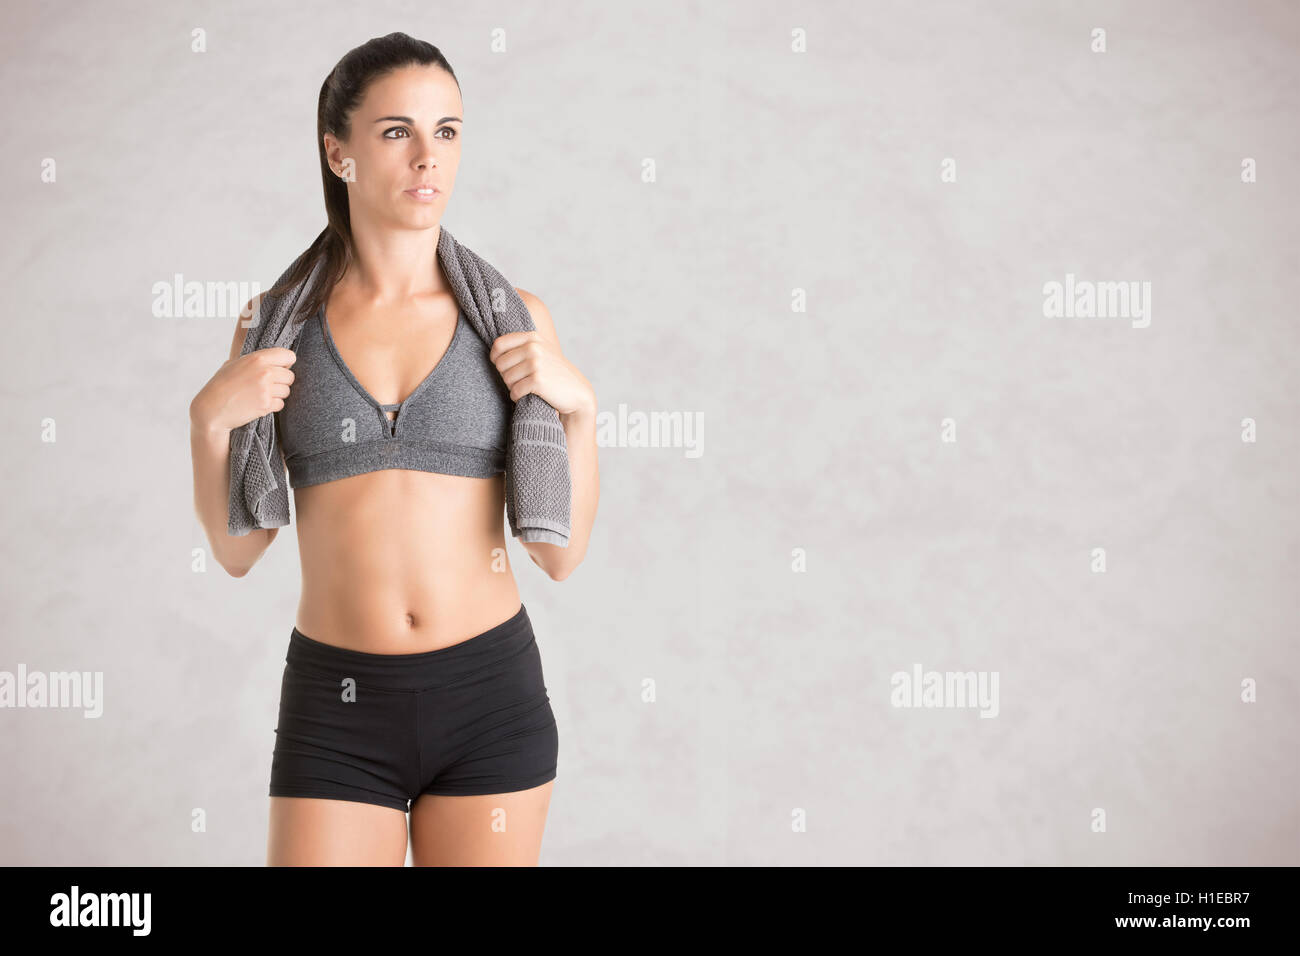 Donna in appoggio con un asciugamano attorno al collo dopo un allenamento fitness, isolato in grigio Foto Stock